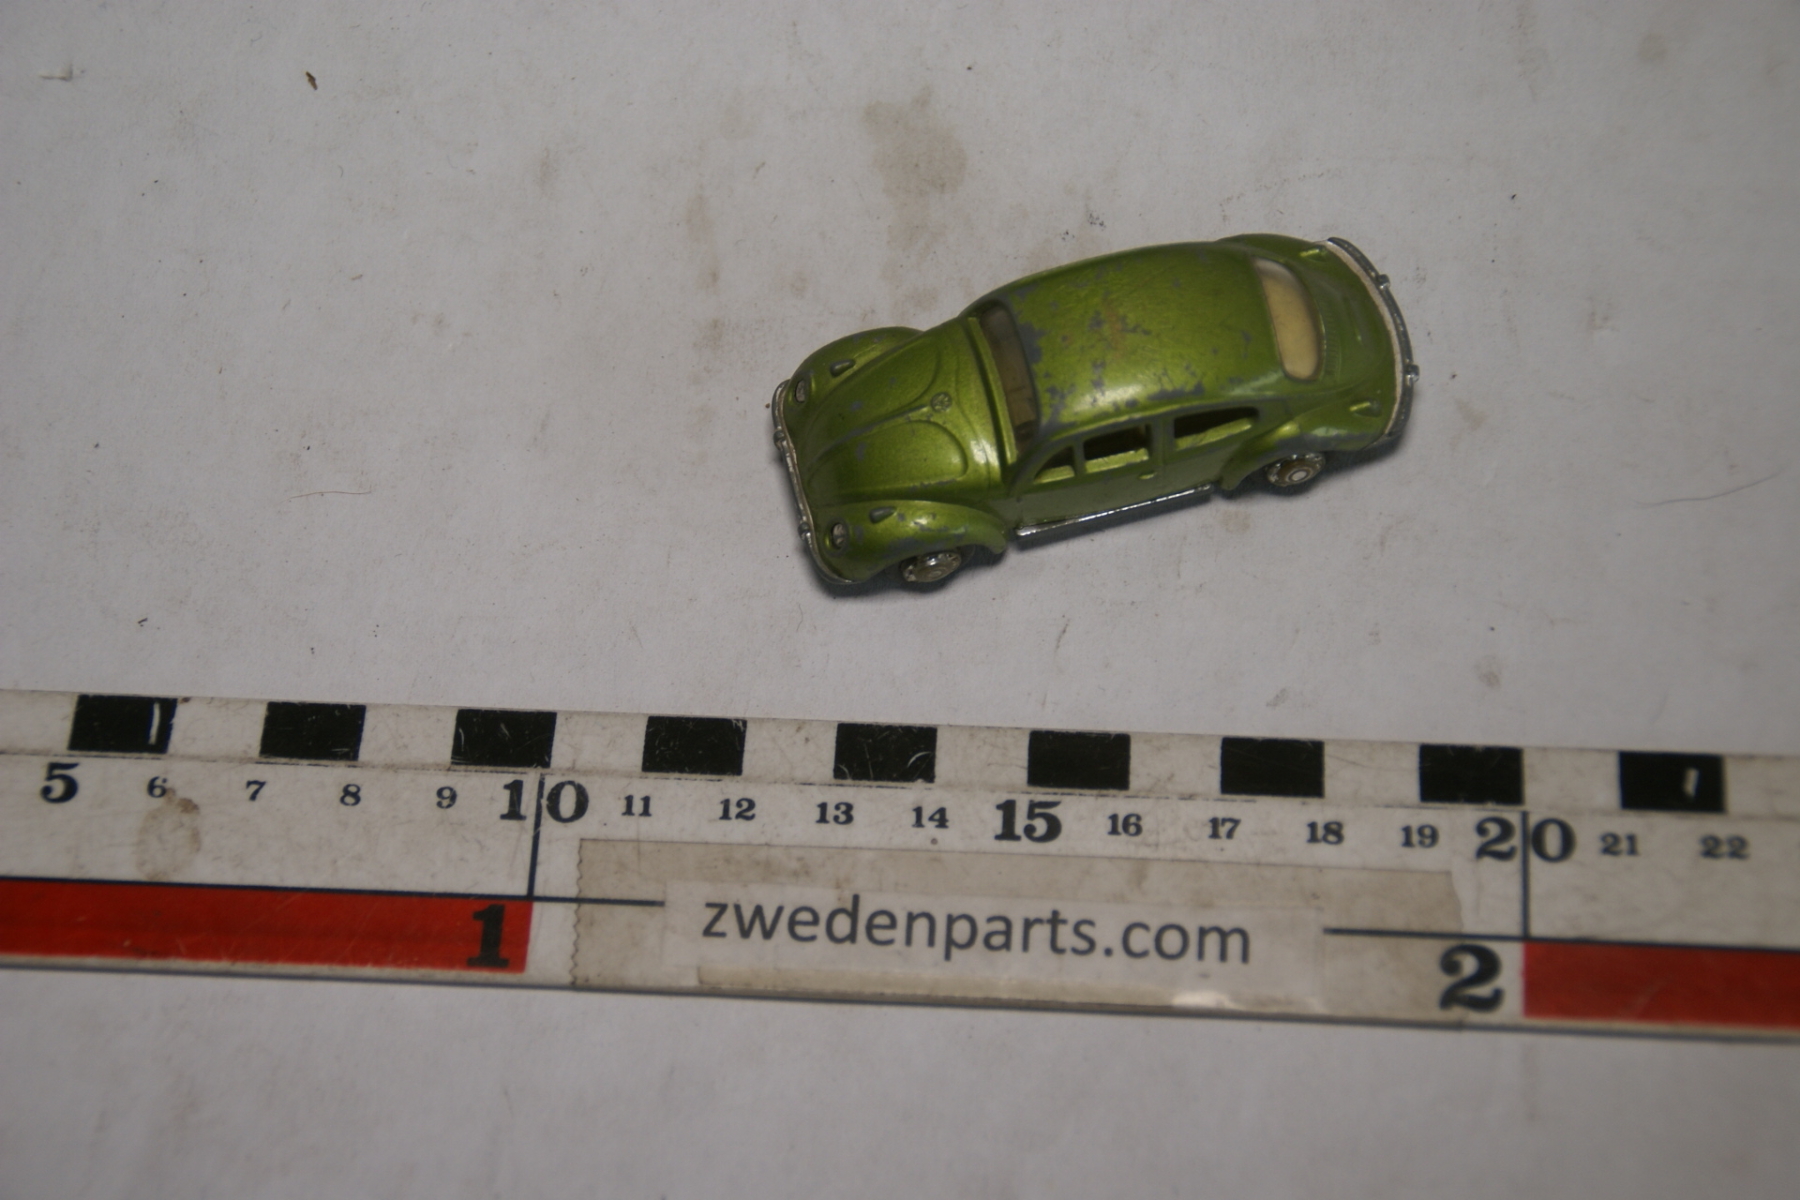 DSC04844 miniatuur VW kever groen Playart ca. 1op66 15